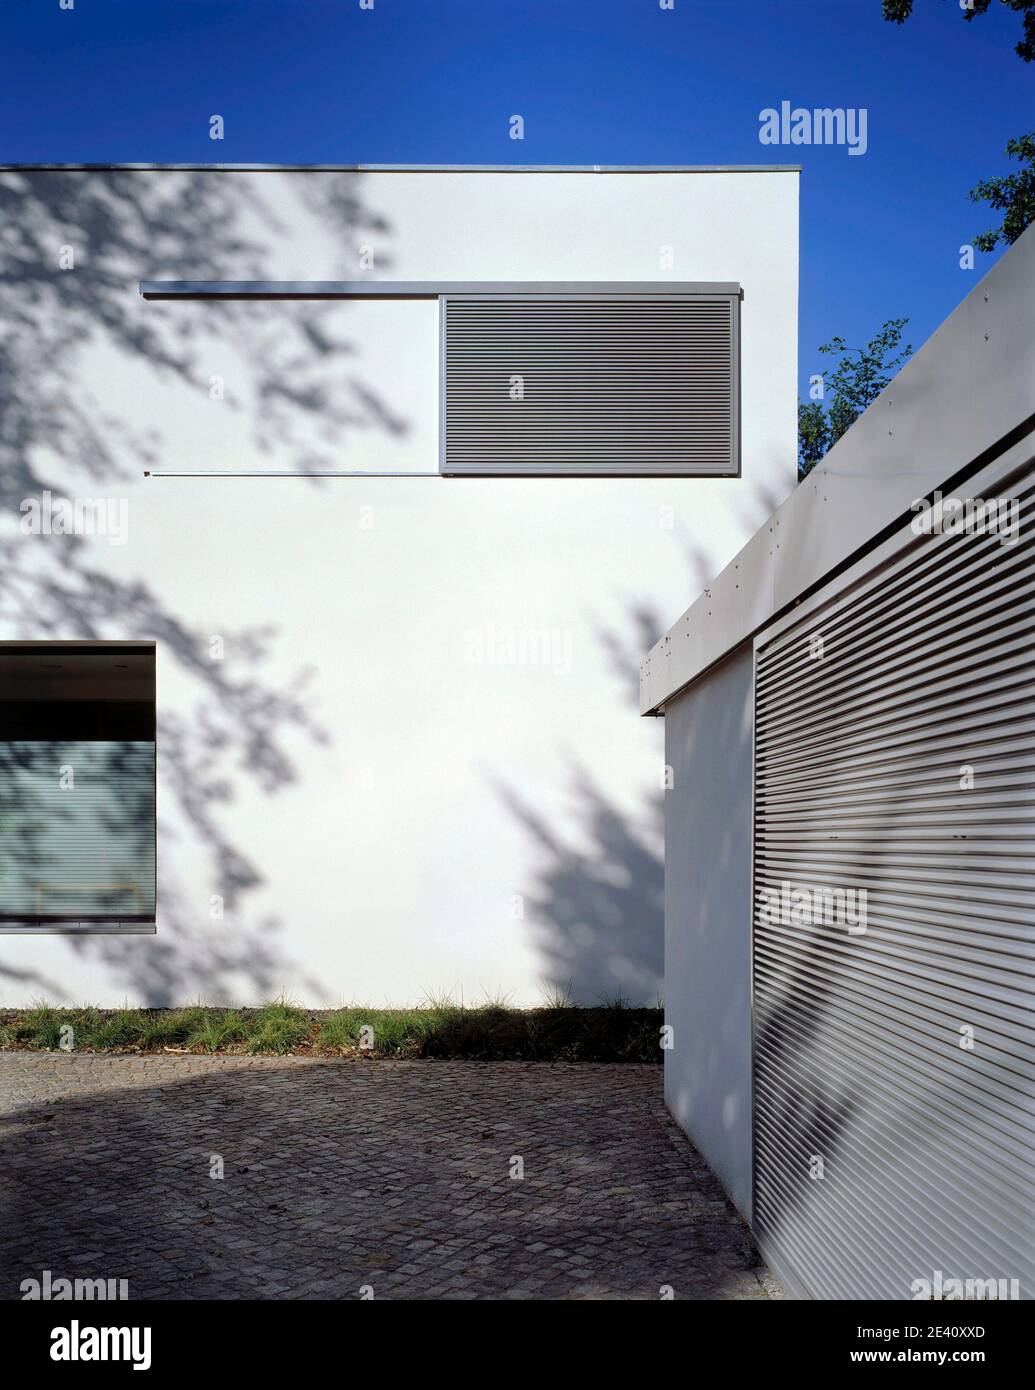 Haus Ronge, Bischofswerder, deutschland, germany, Germania, Alemania, Architect: P+P Schwarzenberger, 2007 Stock Photo